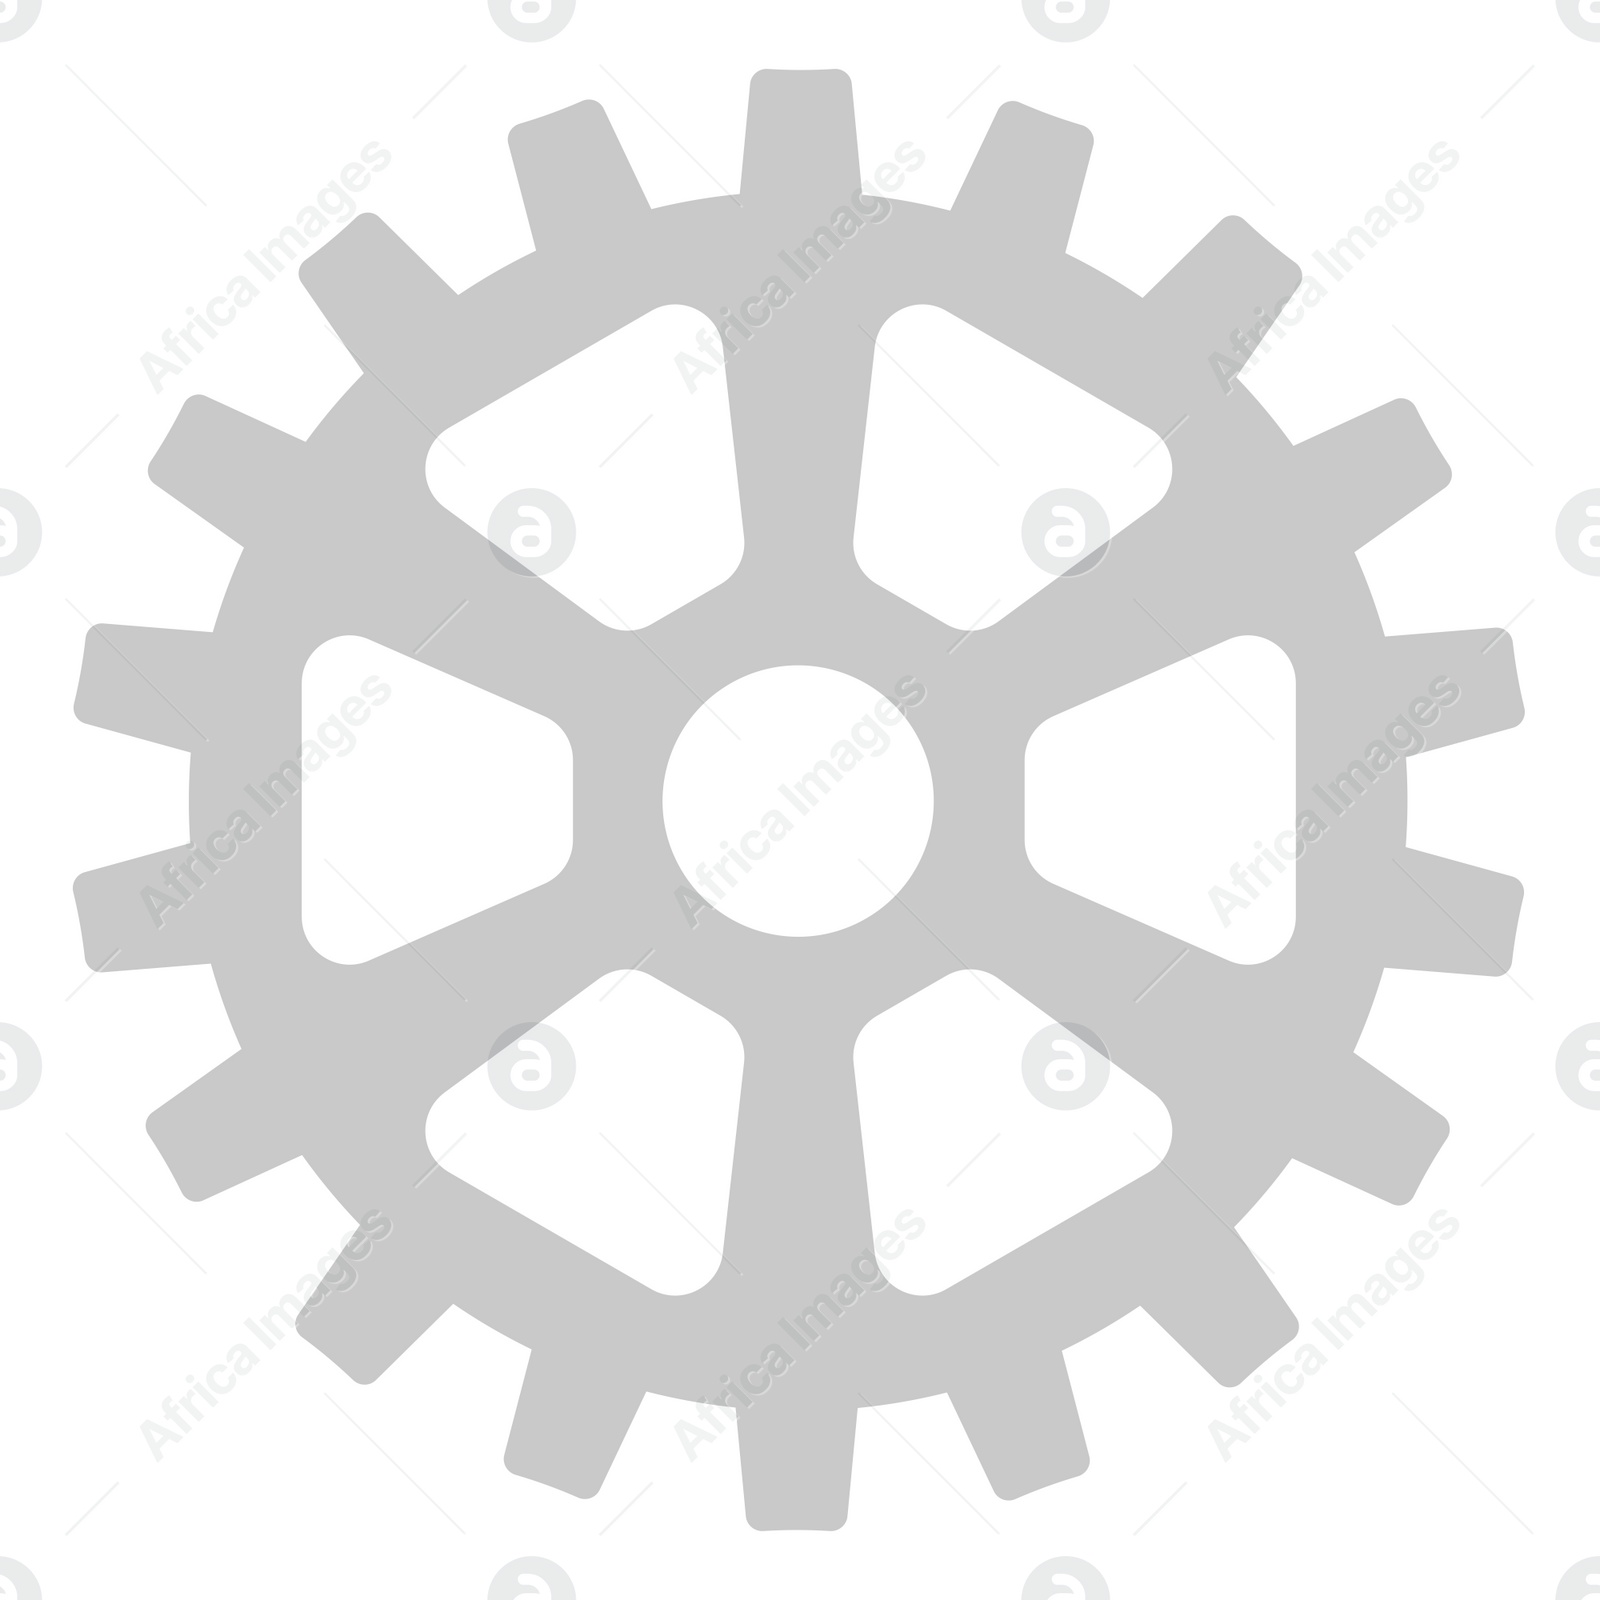 Illustration of  cogwheel for gear mechanism on white background